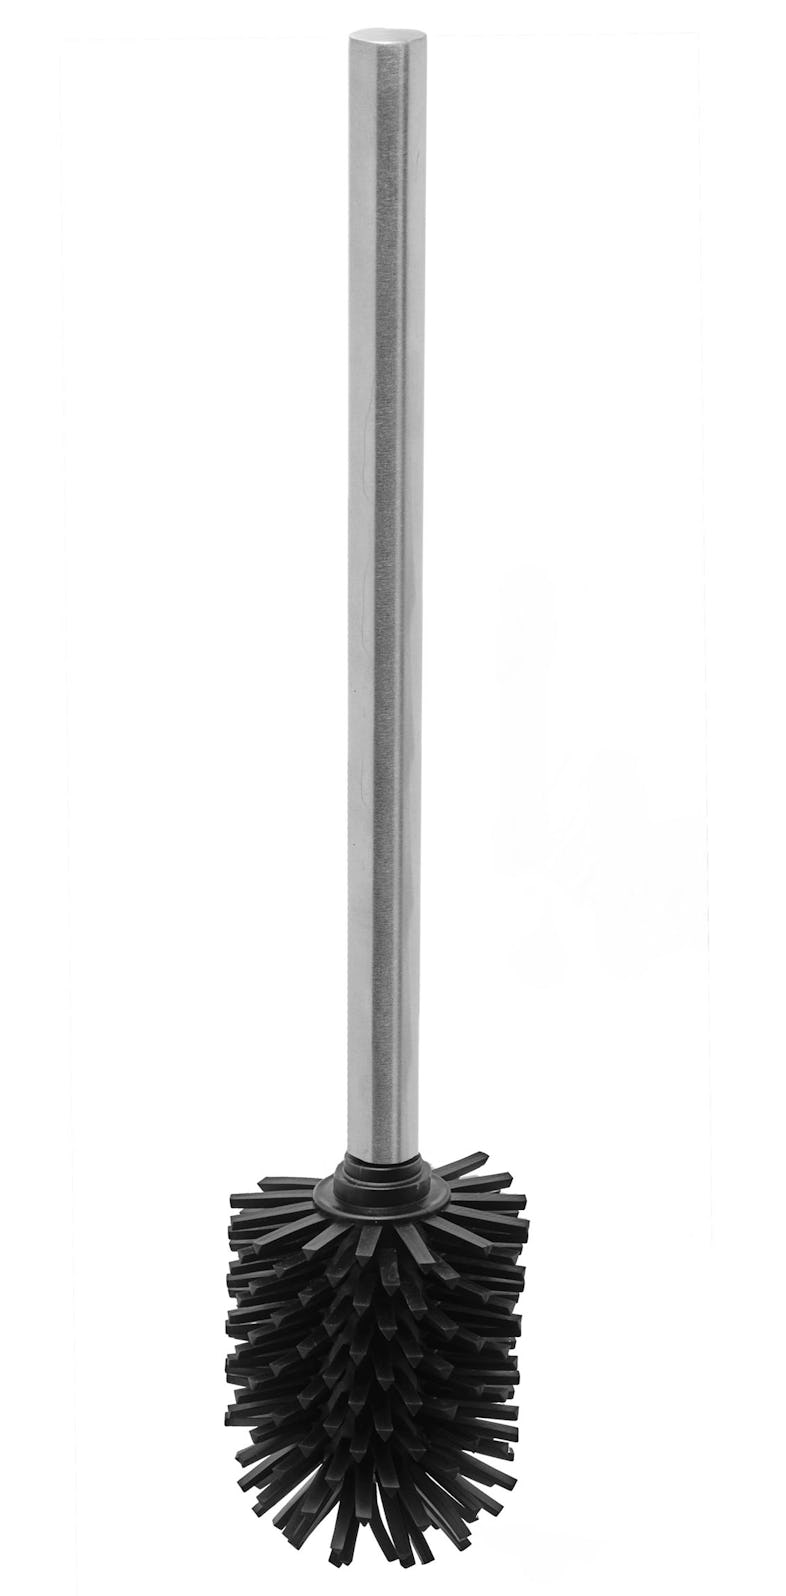 AMARE Luxus Silikon METRO Wandhalterung 11,5 cm x belüftet Edelstahl/Glas, WC-Bürste 37,5 9 Marktplatz x mit 